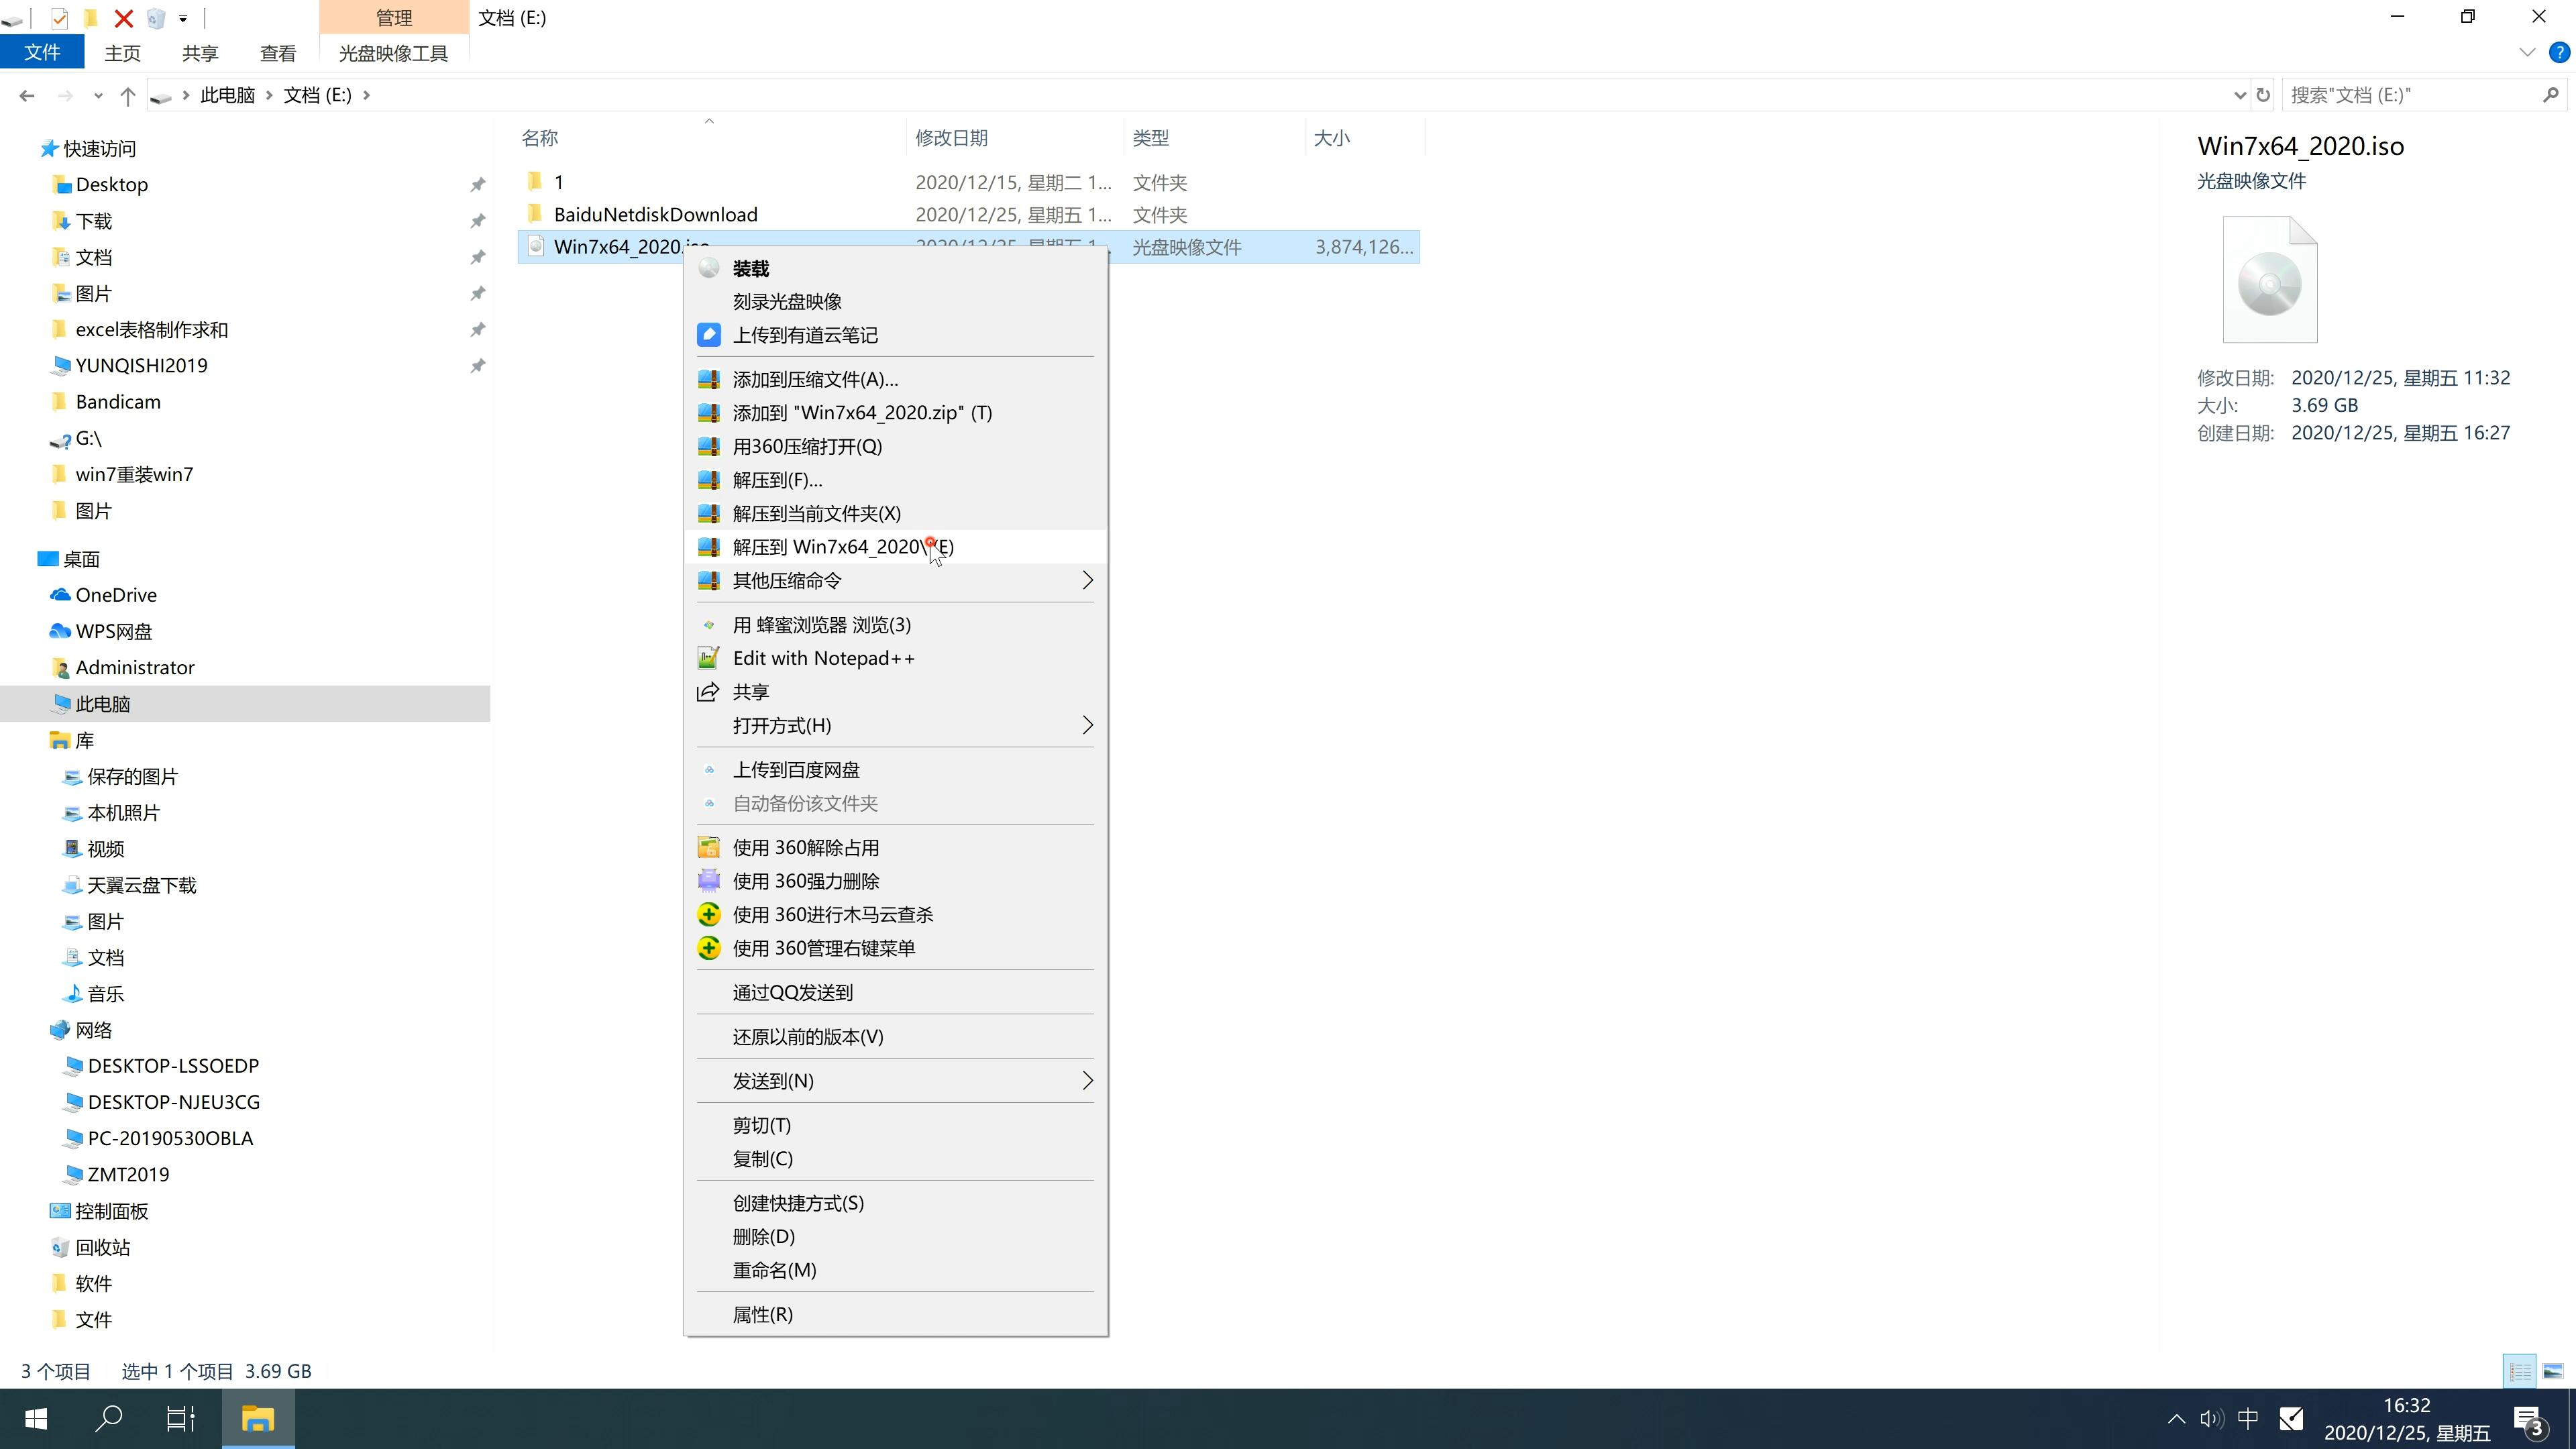 最新系统之家系统 GHOST Window7 64 SP1 万能纯净版 V2021.07(2)